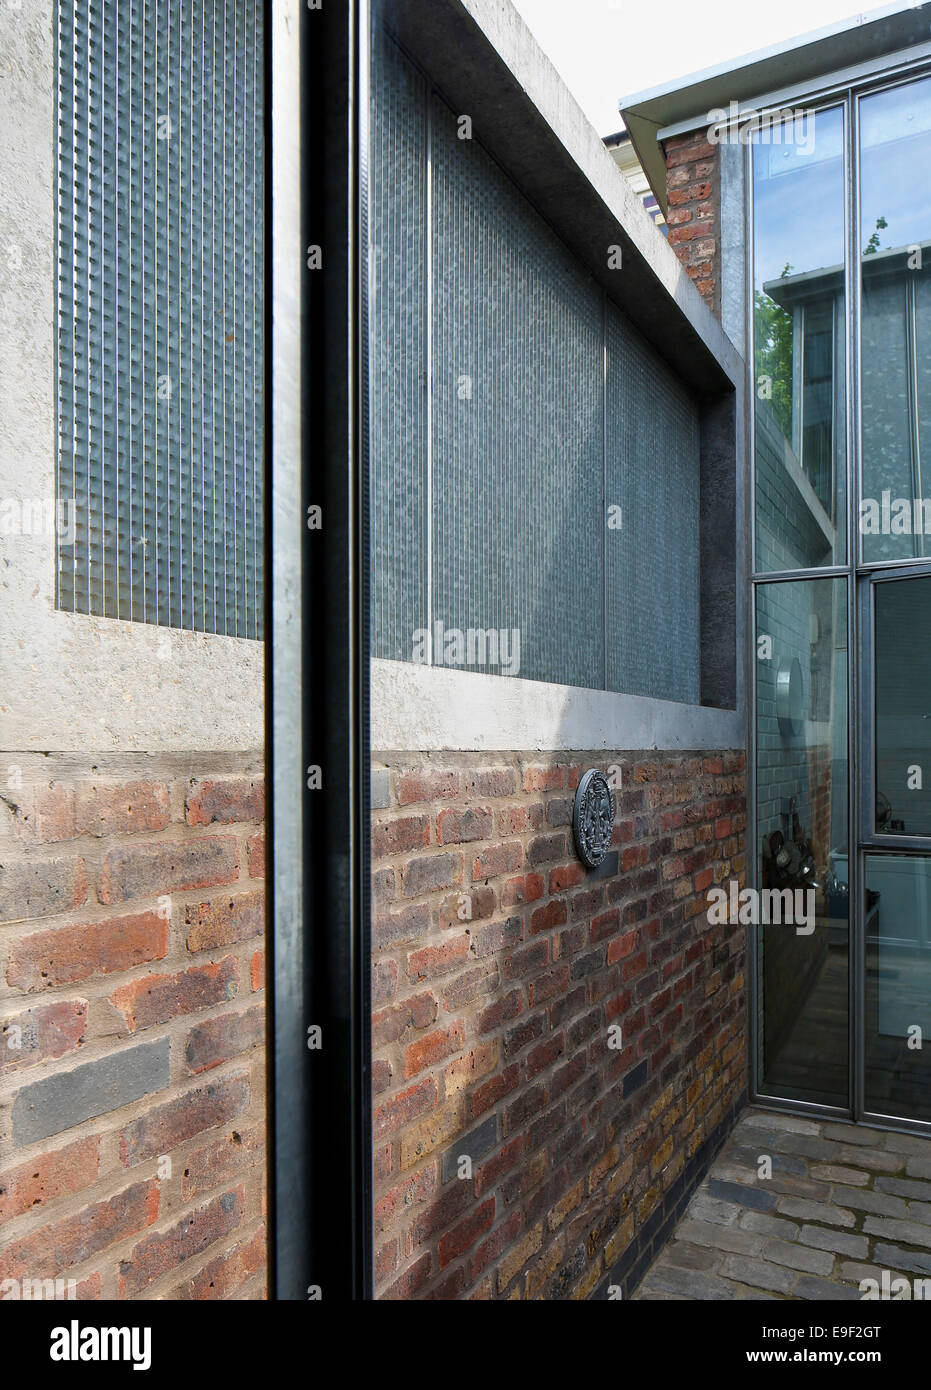 Hale Street House, un revoir, Londres, Royaume-Uni. Architecte : DSDHA, 2014. Voir 8 ans après l'achèvement, à la perspective Banque D'Images